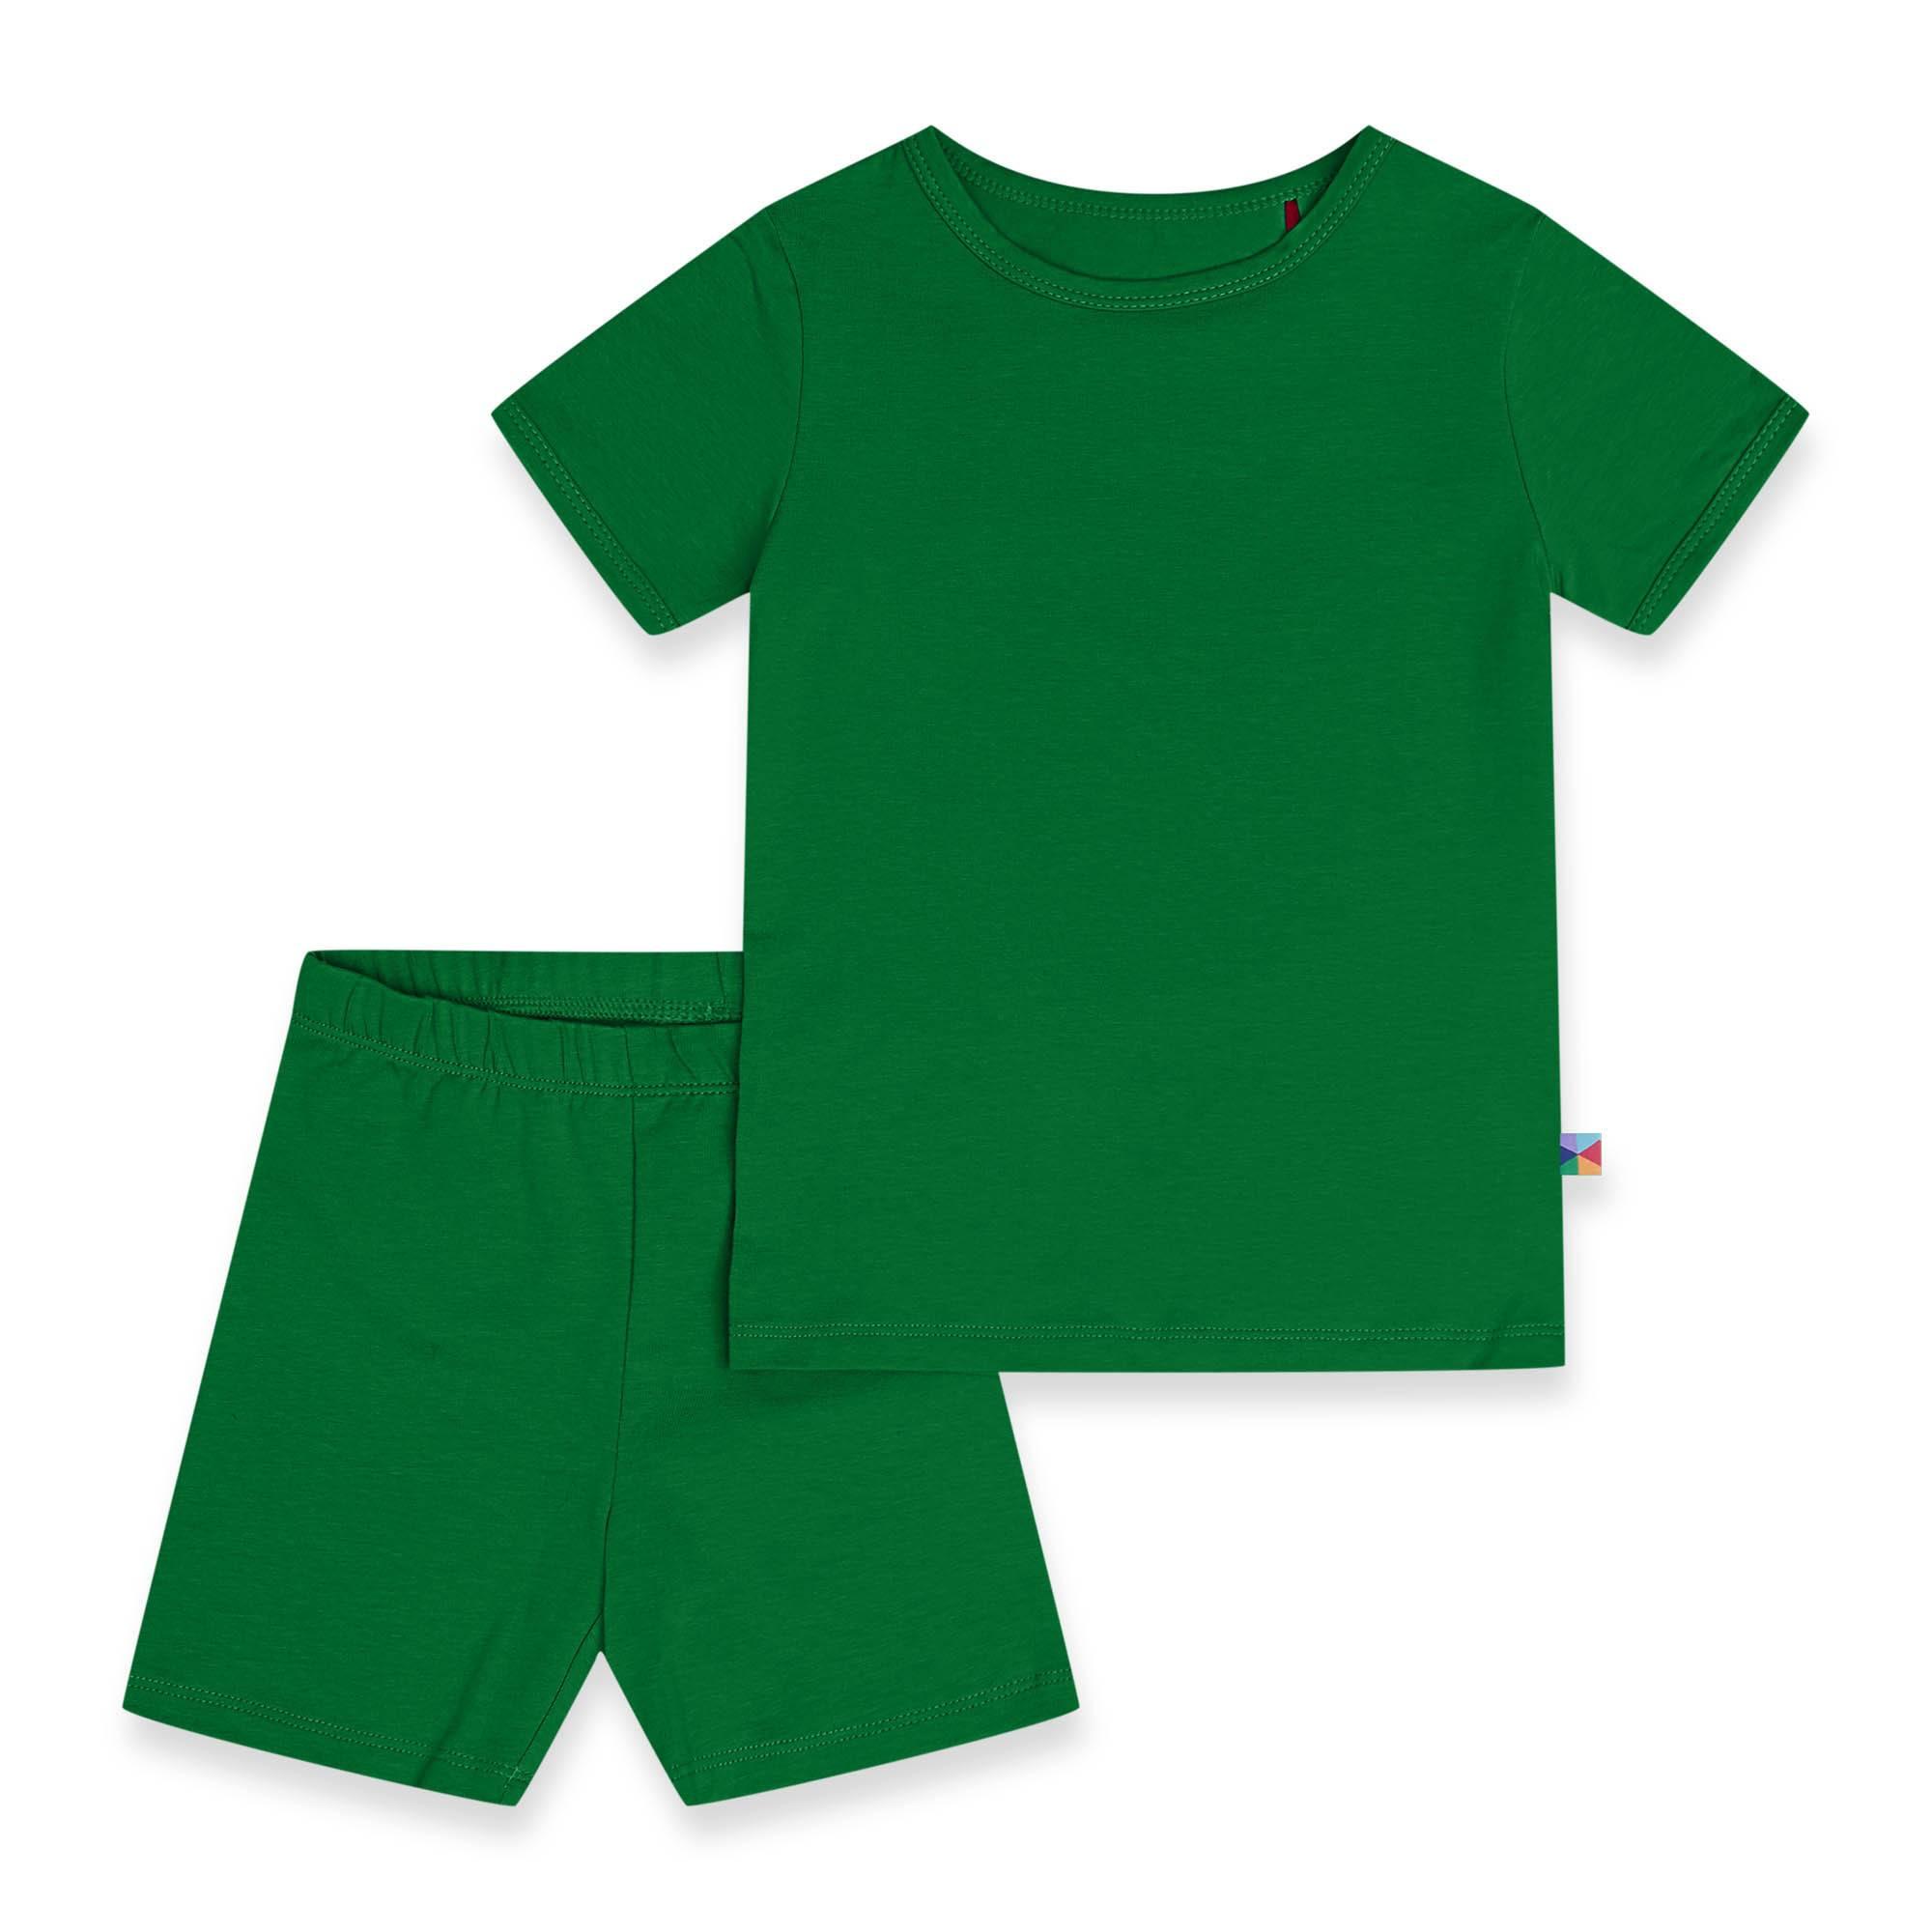 Zielona piżamka na krótki rękaw